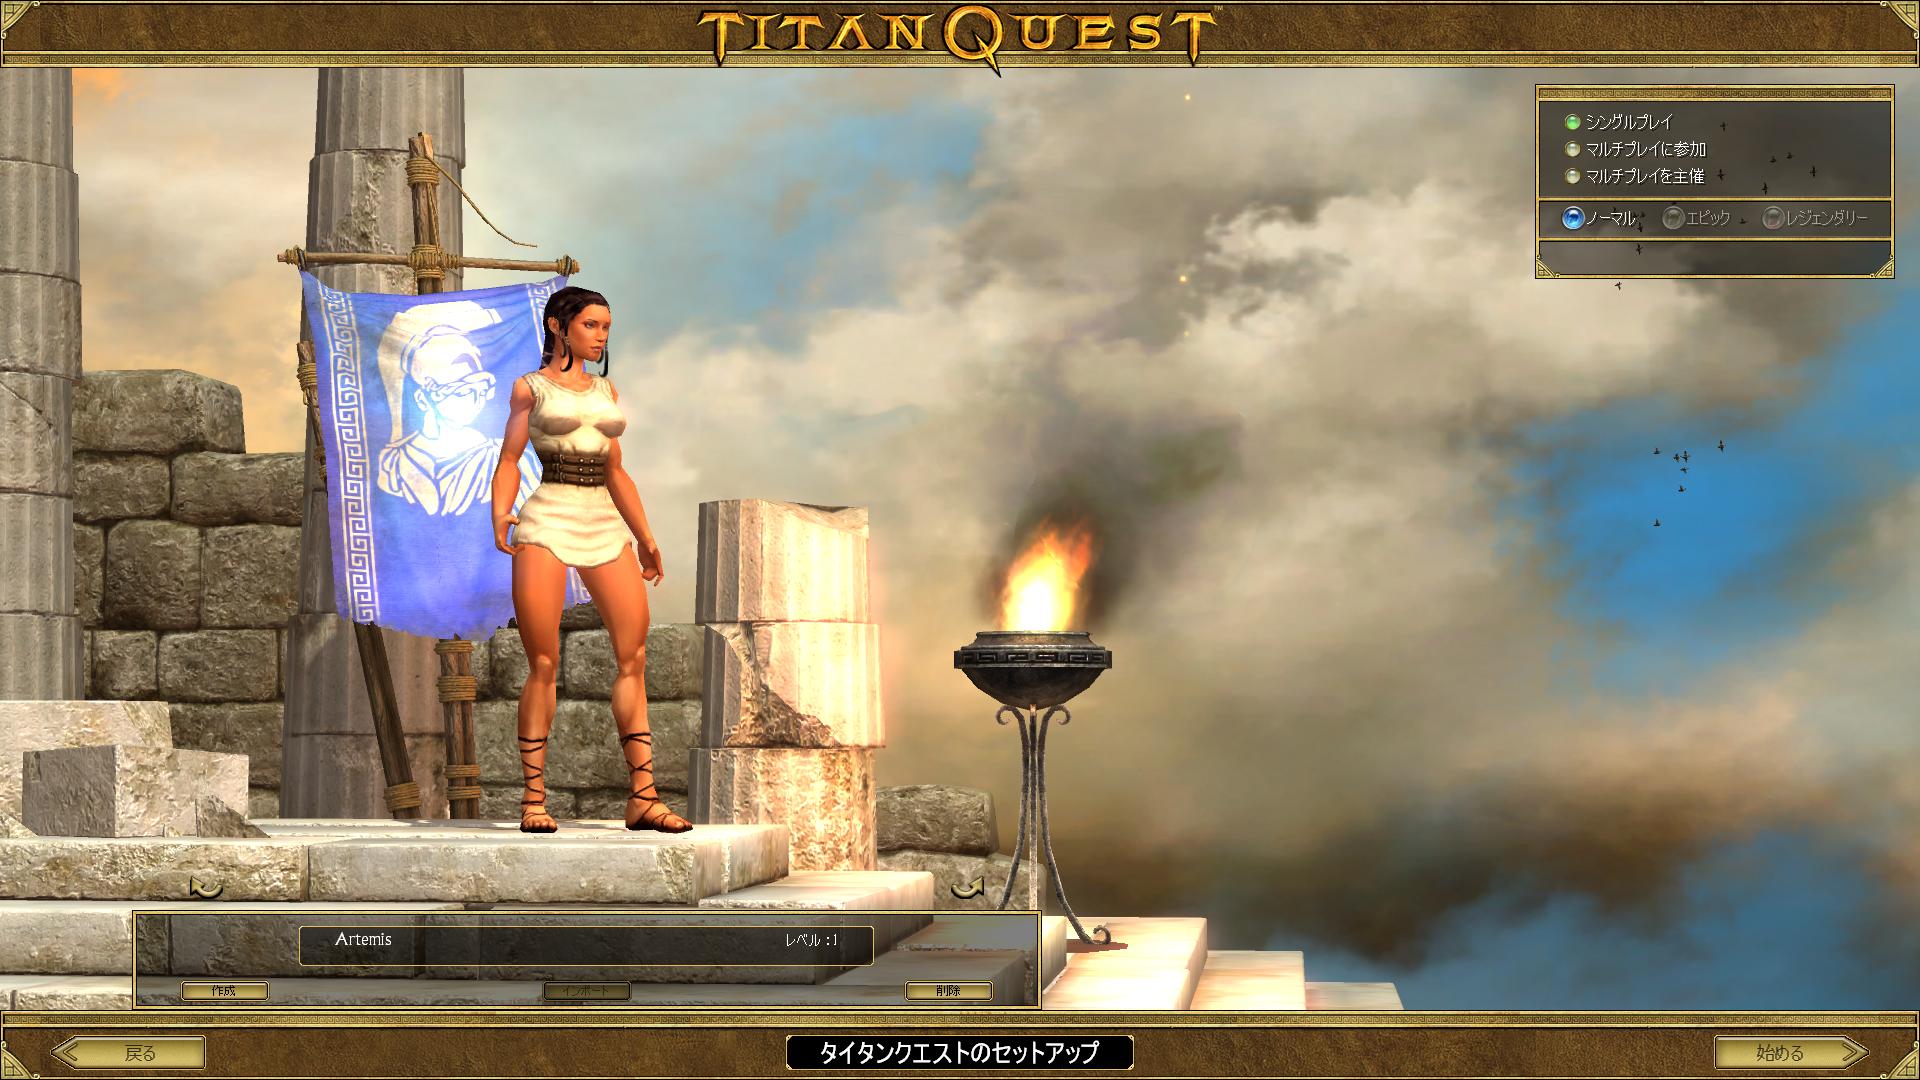 Titan Quest Anniversary Edition 始めました Titan Quest Anniversary Edition